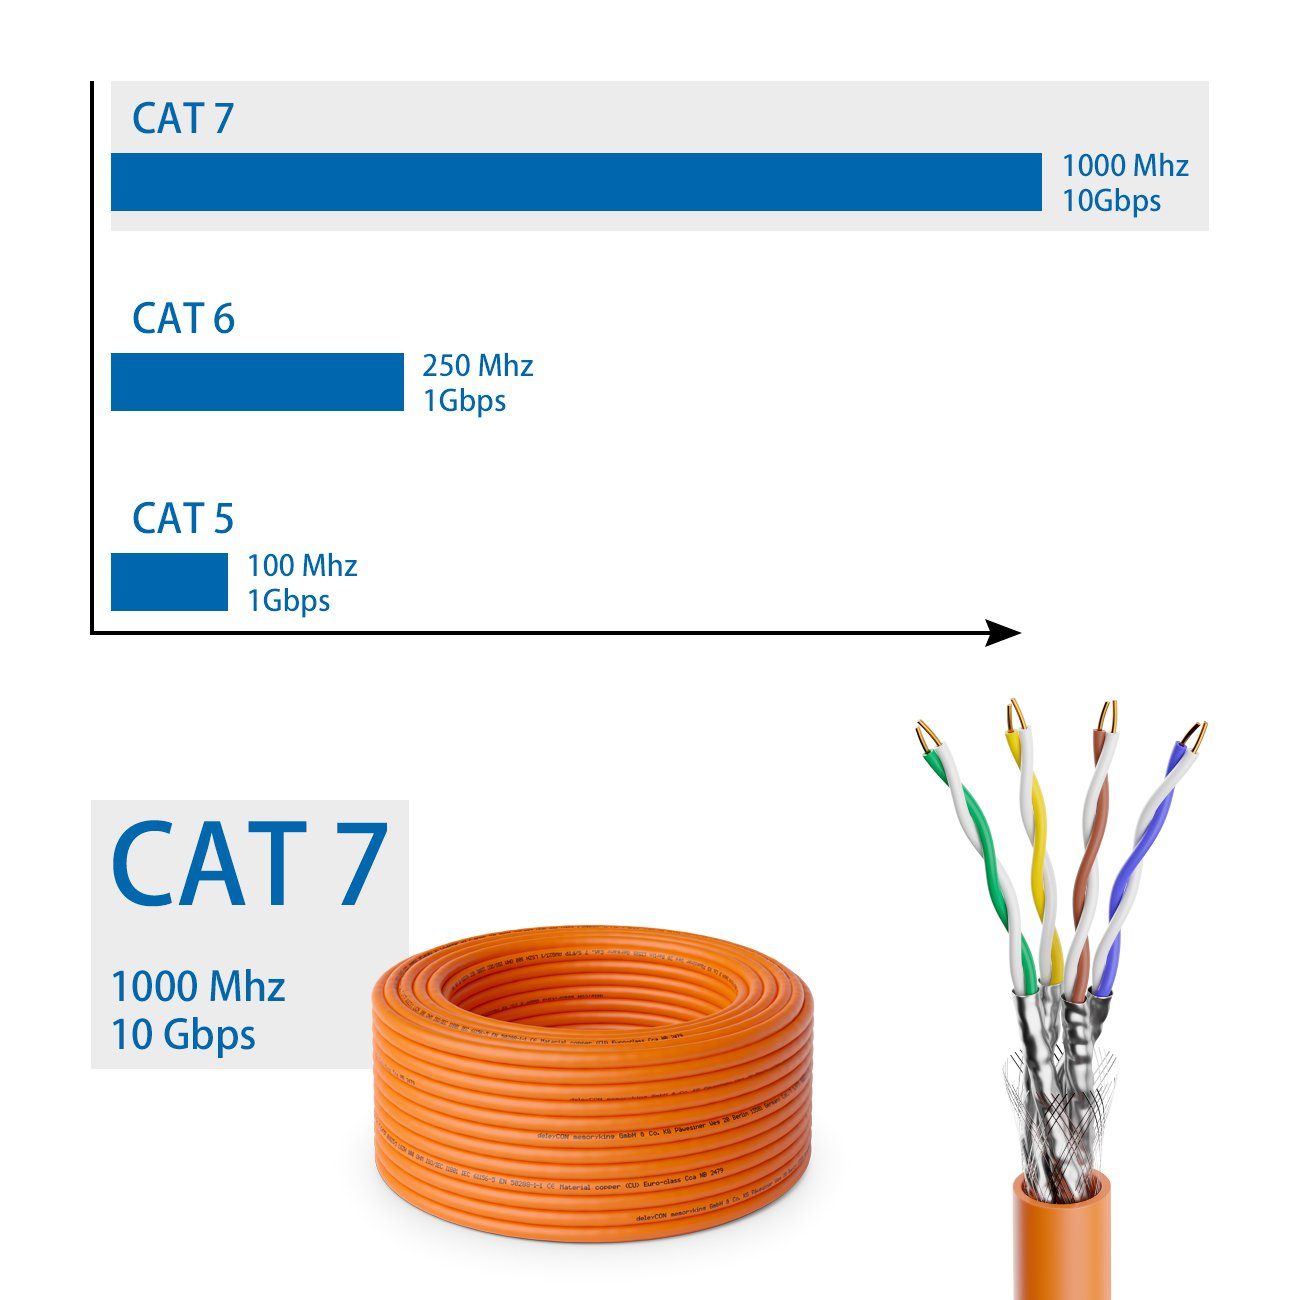 LAN-Kabel deleyCON 30m Netzwerkkabel Schirmung Verlegekabel deleyCON 10Gbit 7 CAT S/FTP